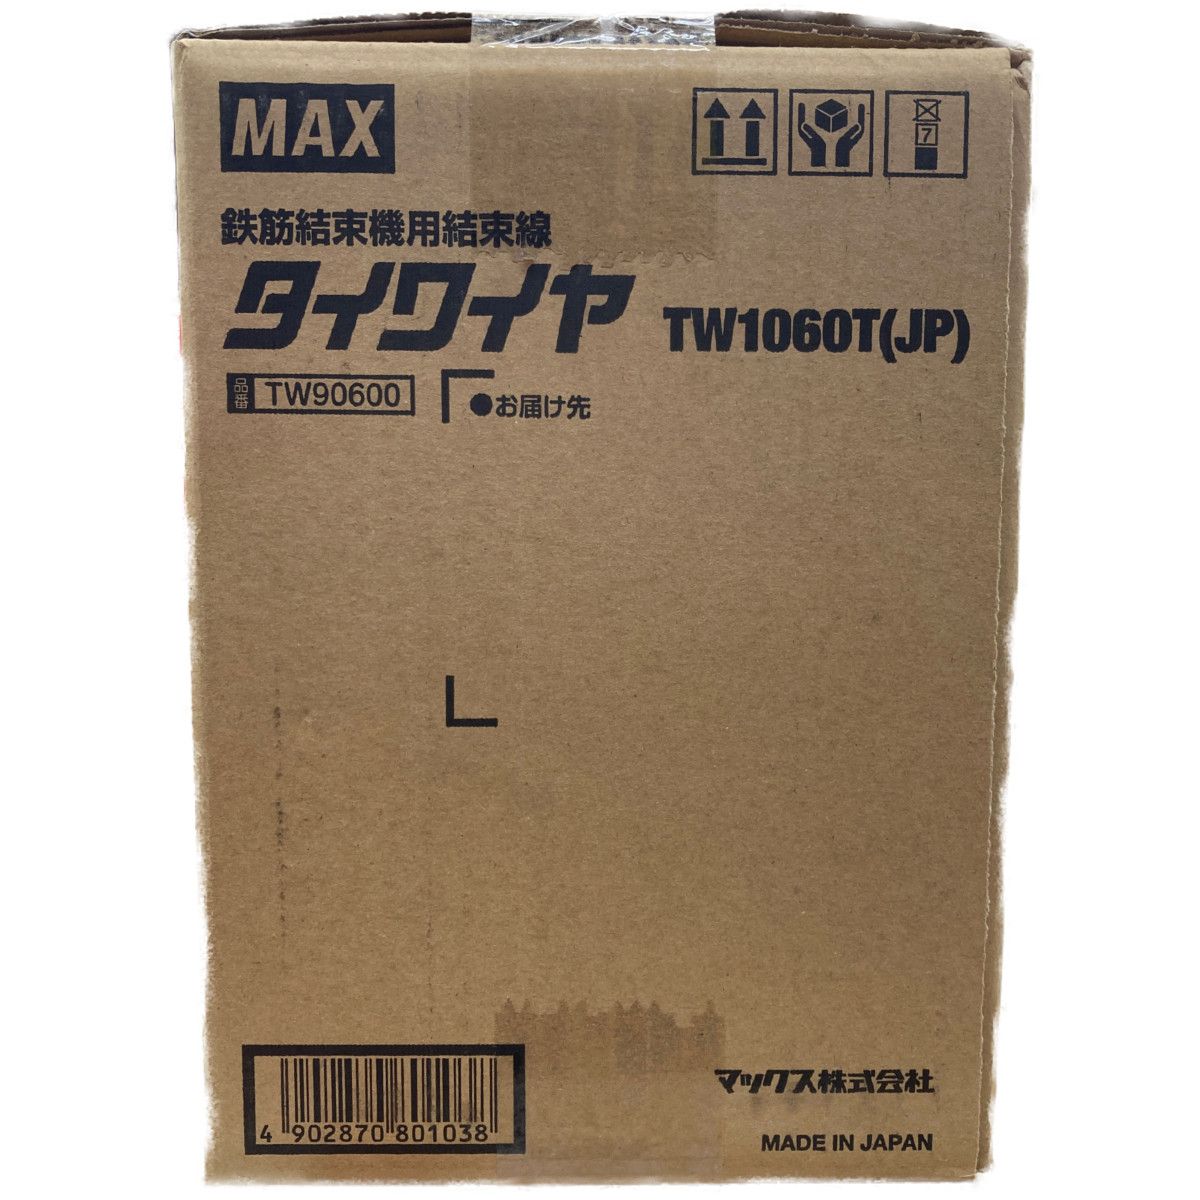 ○○ MAX 鉄筋結束機用結束線 タイワイヤTW1060T(JP) φ1.0mm - メルカリ